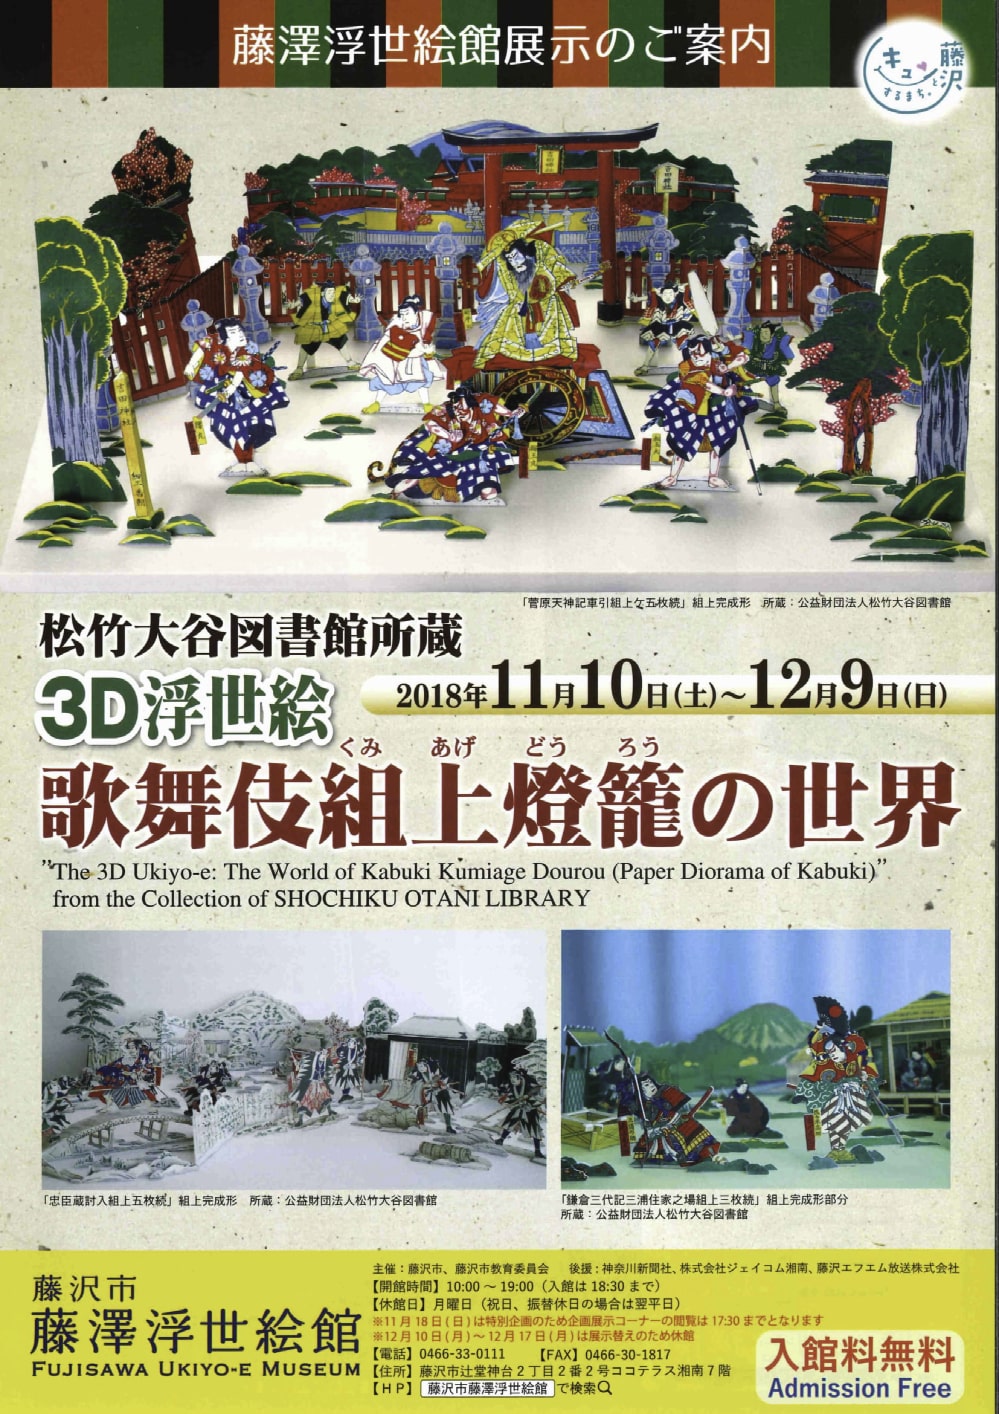 「松竹大谷図書館所蔵 3D浮世絵 歌舞伎組上燈籠の世界」展のお知らせ